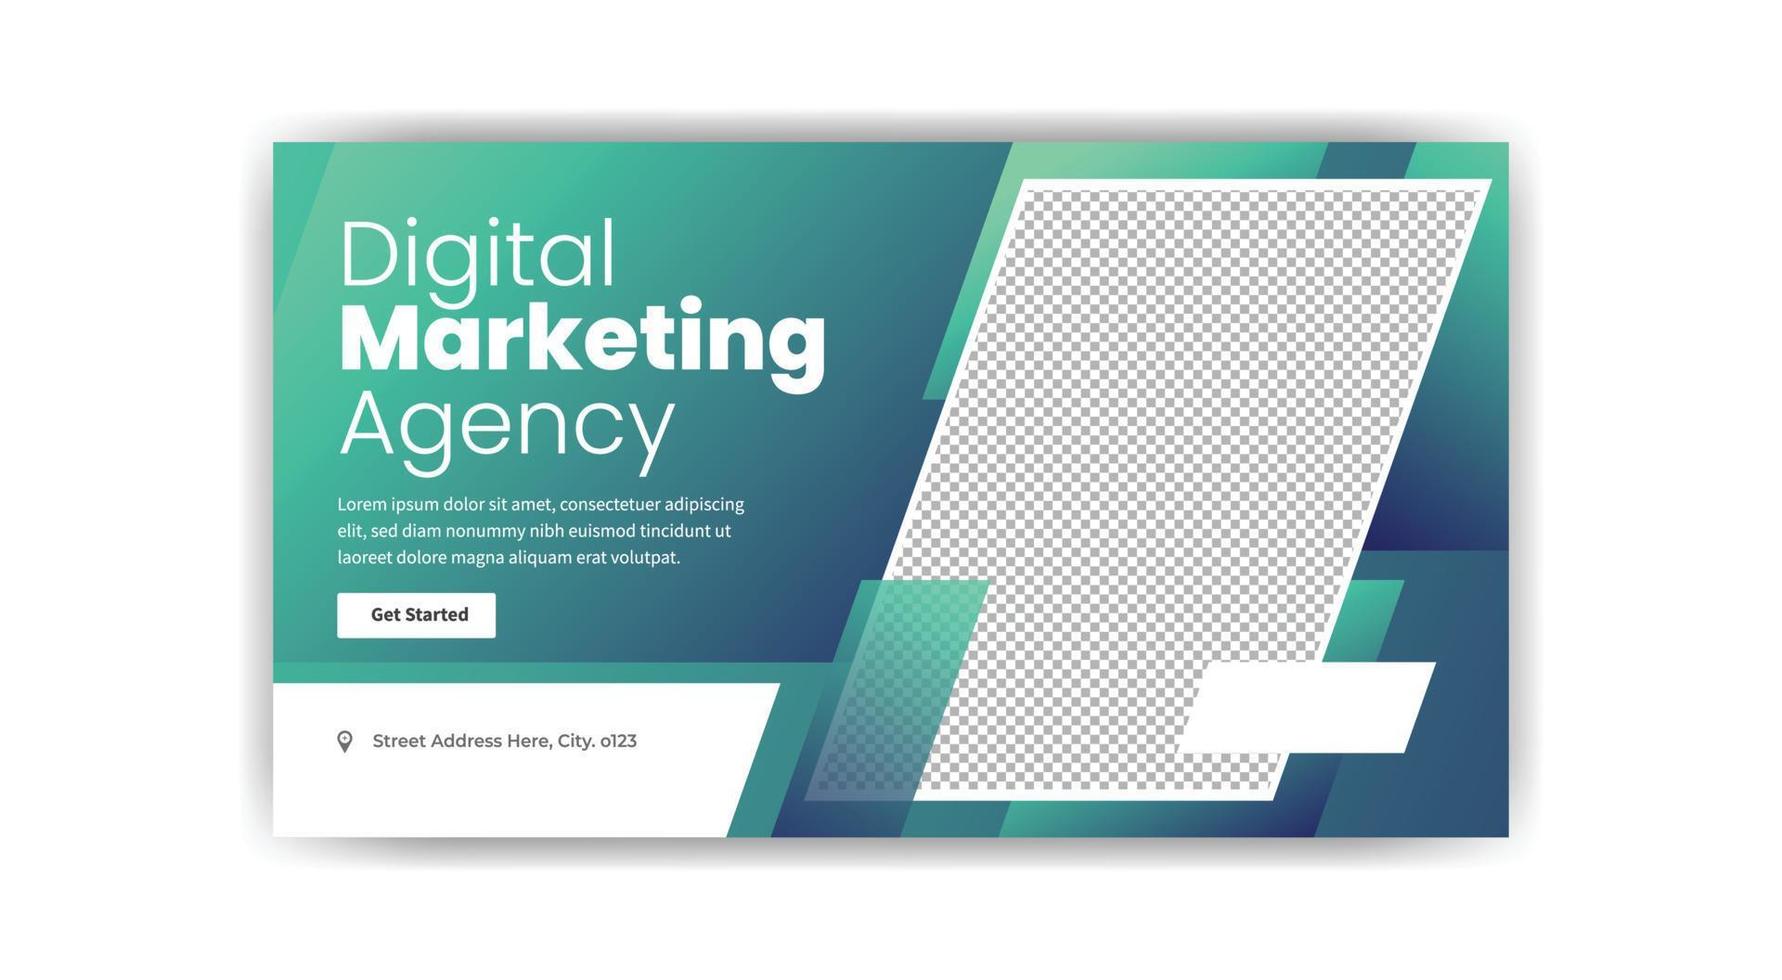 Thumbnail-Banner-Design für digitales Marketing. kreative Banner-Vorlage. vektor